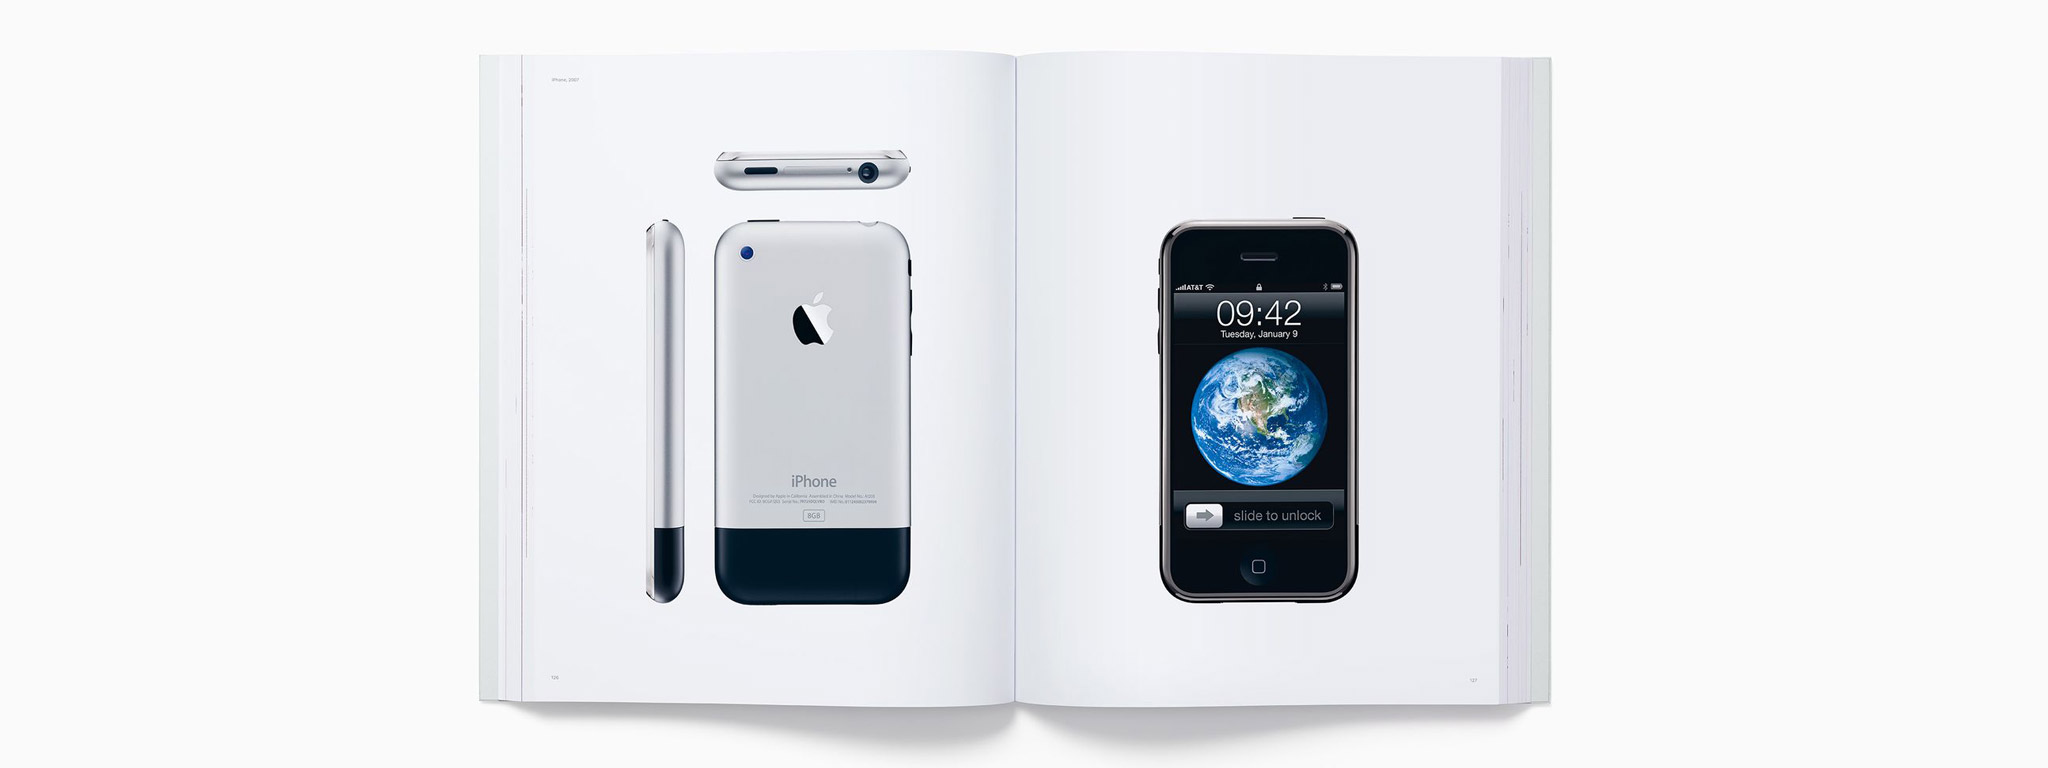 Apple phát hành sách chứa 450 bức ảnh sản phẩm của hãng, giá 200-300 đô la